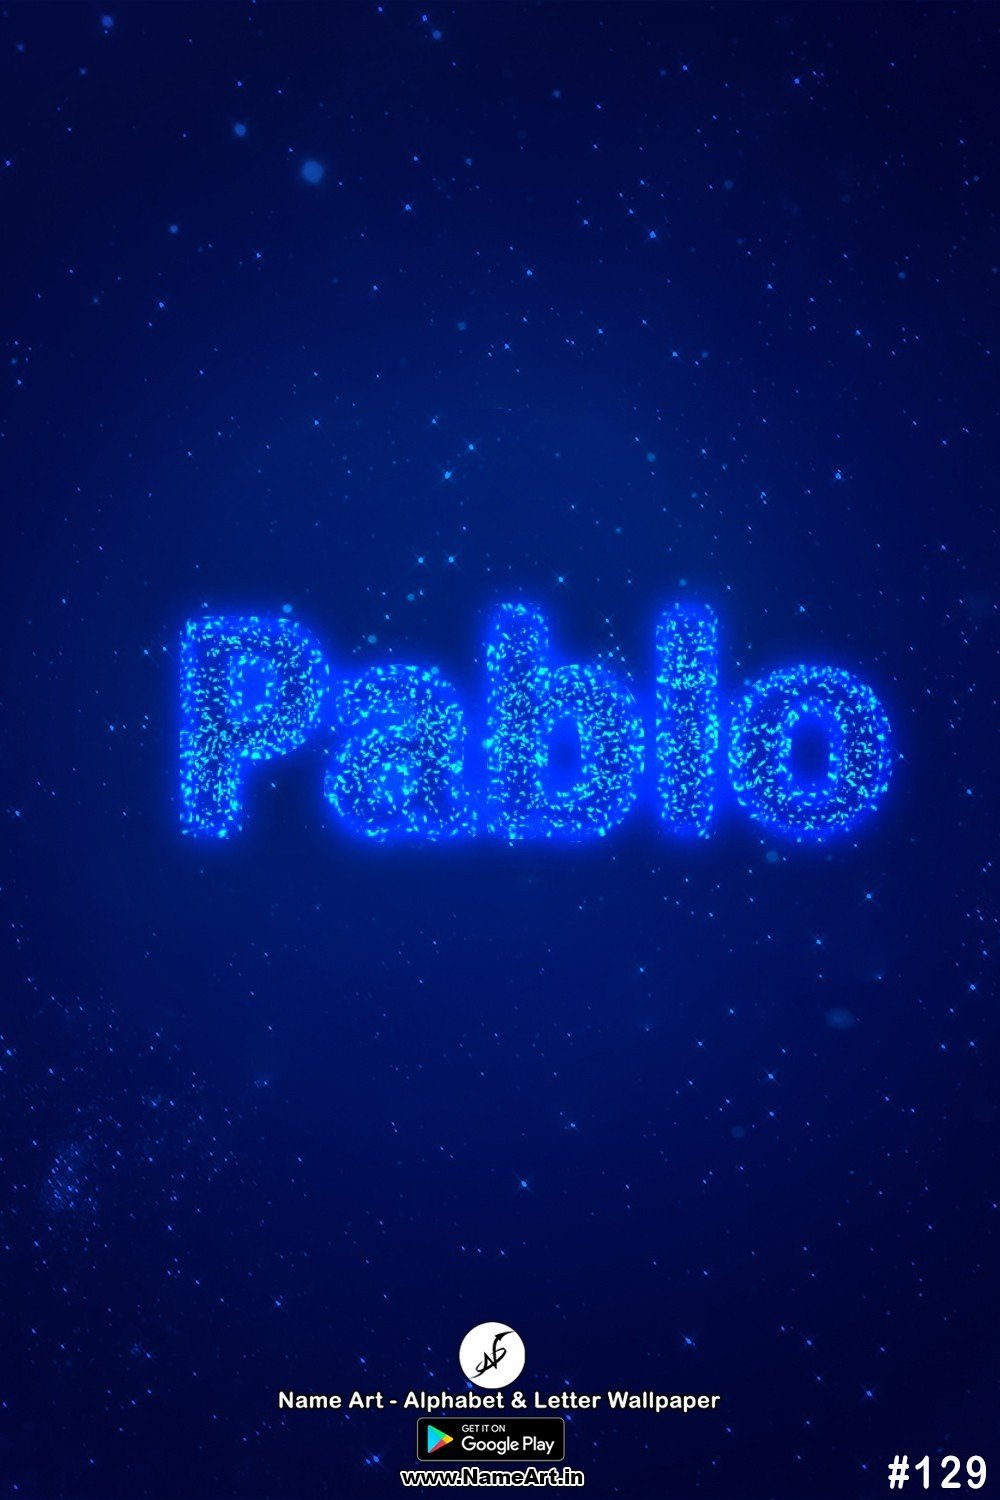 Pablo | Whatsapp Status Pablo | Happy Birthday Pablo !! | New Whatsapp Status Pablo Images |